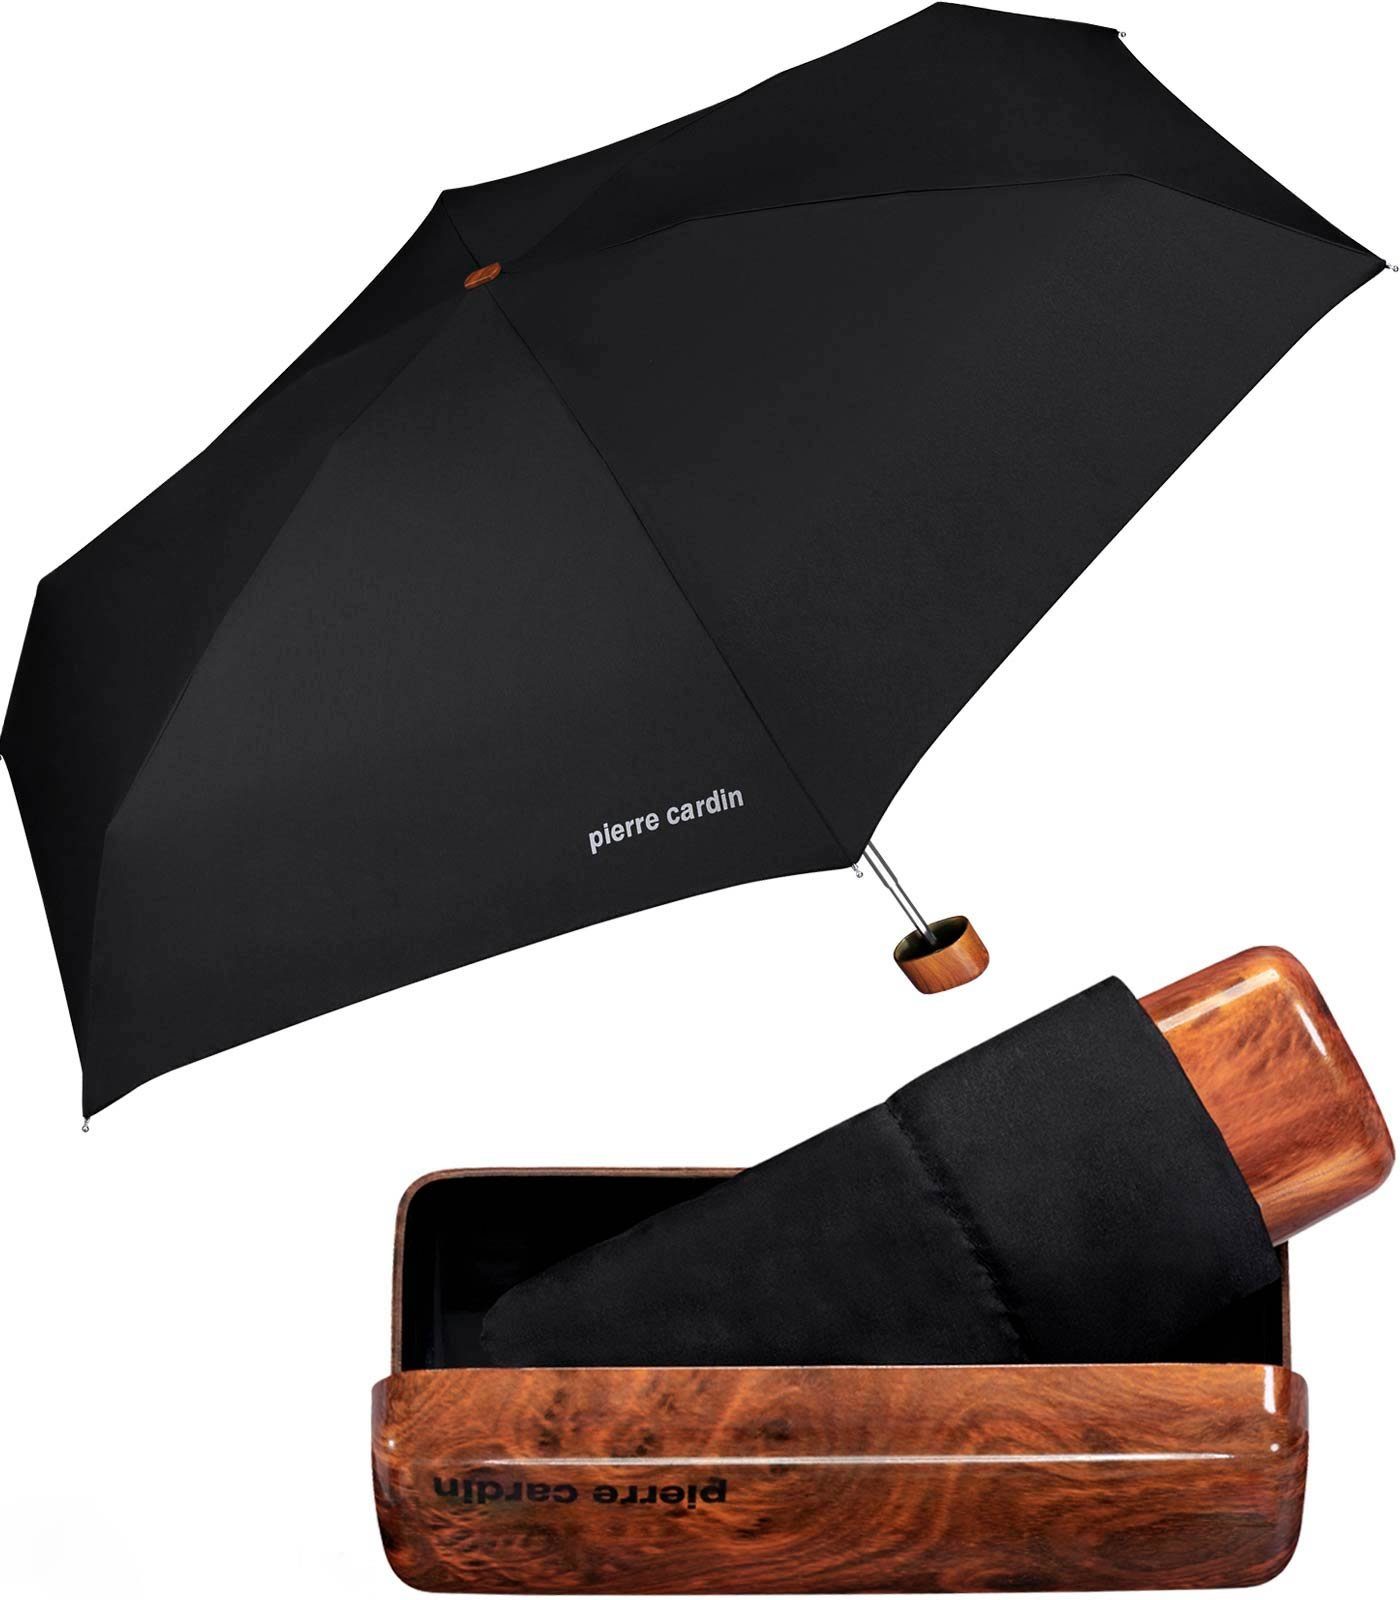 besonders Etui Etui Noire, Cardin Pierre leichter dem mybrella Hard-Case edel mit Taschenregenschirm Minischirm mit in Holzoptik